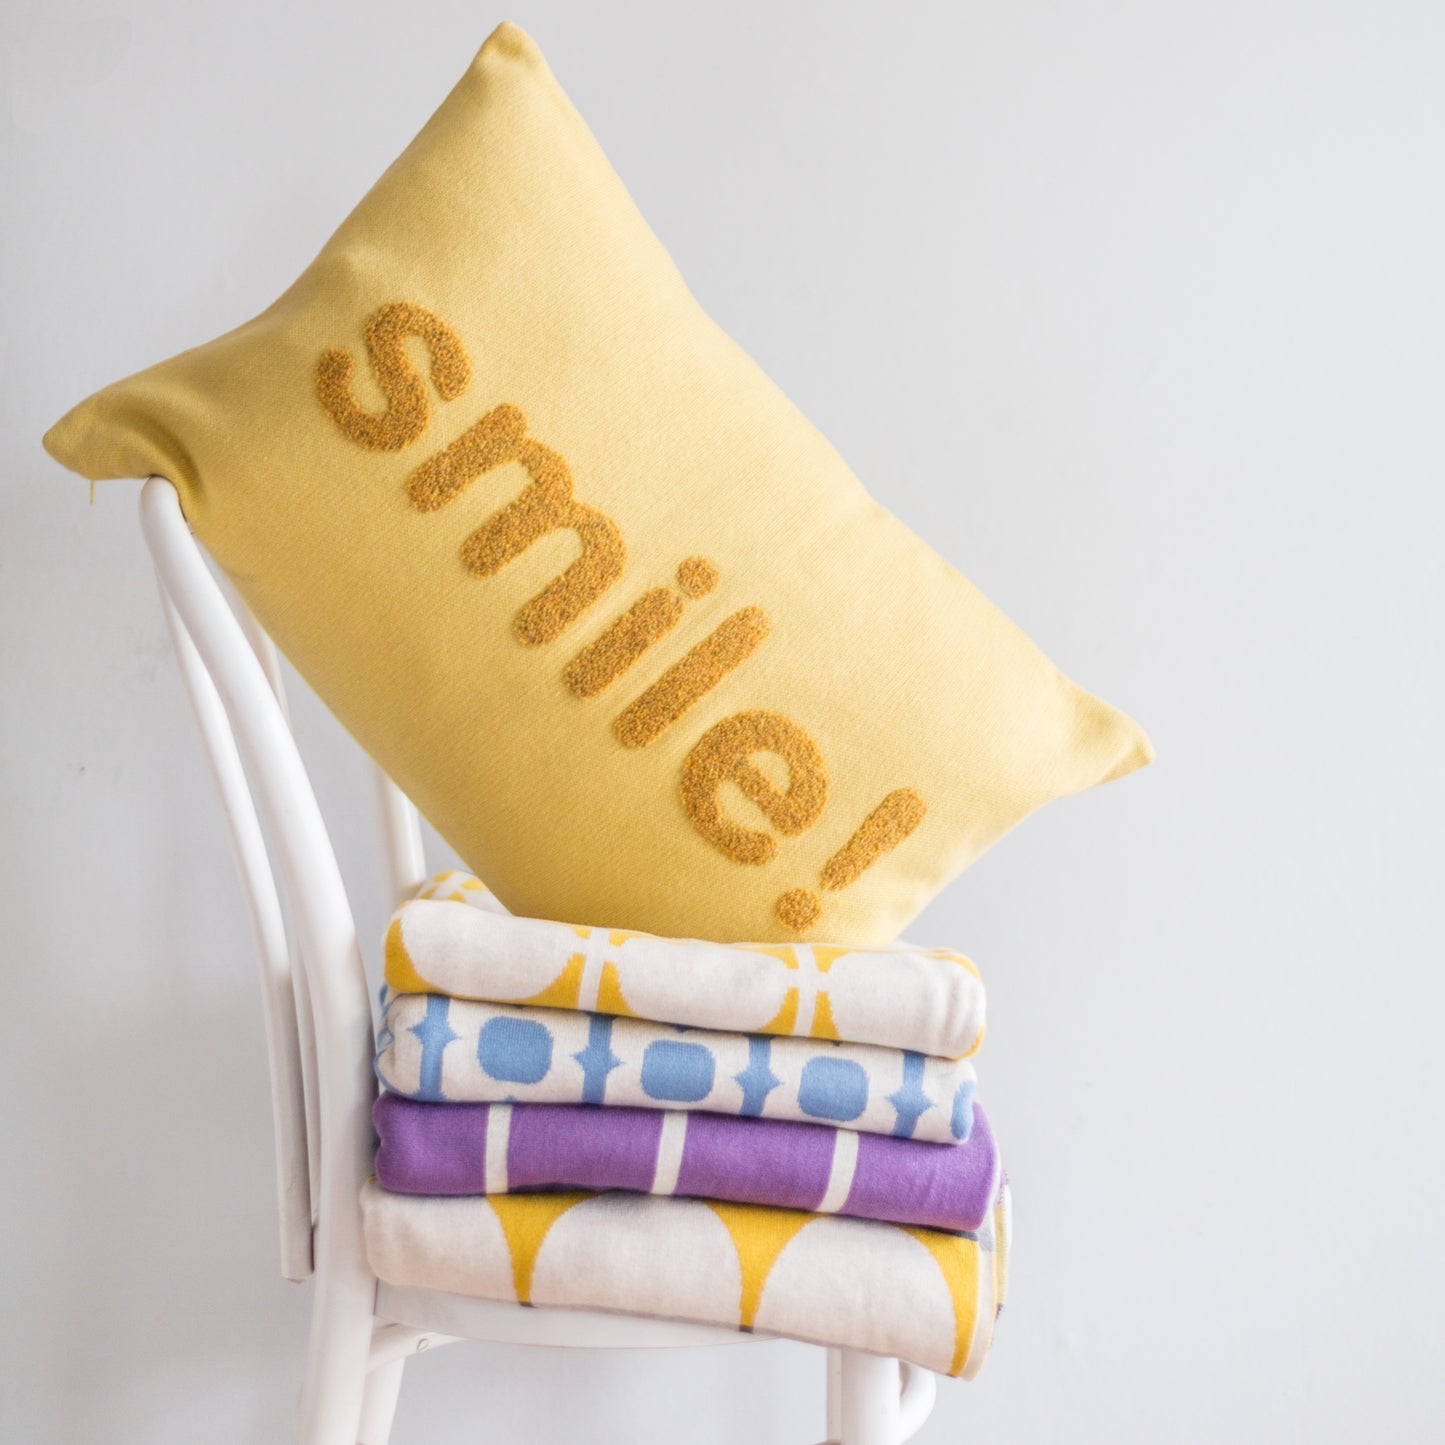 'Smile' Cushion Yellow